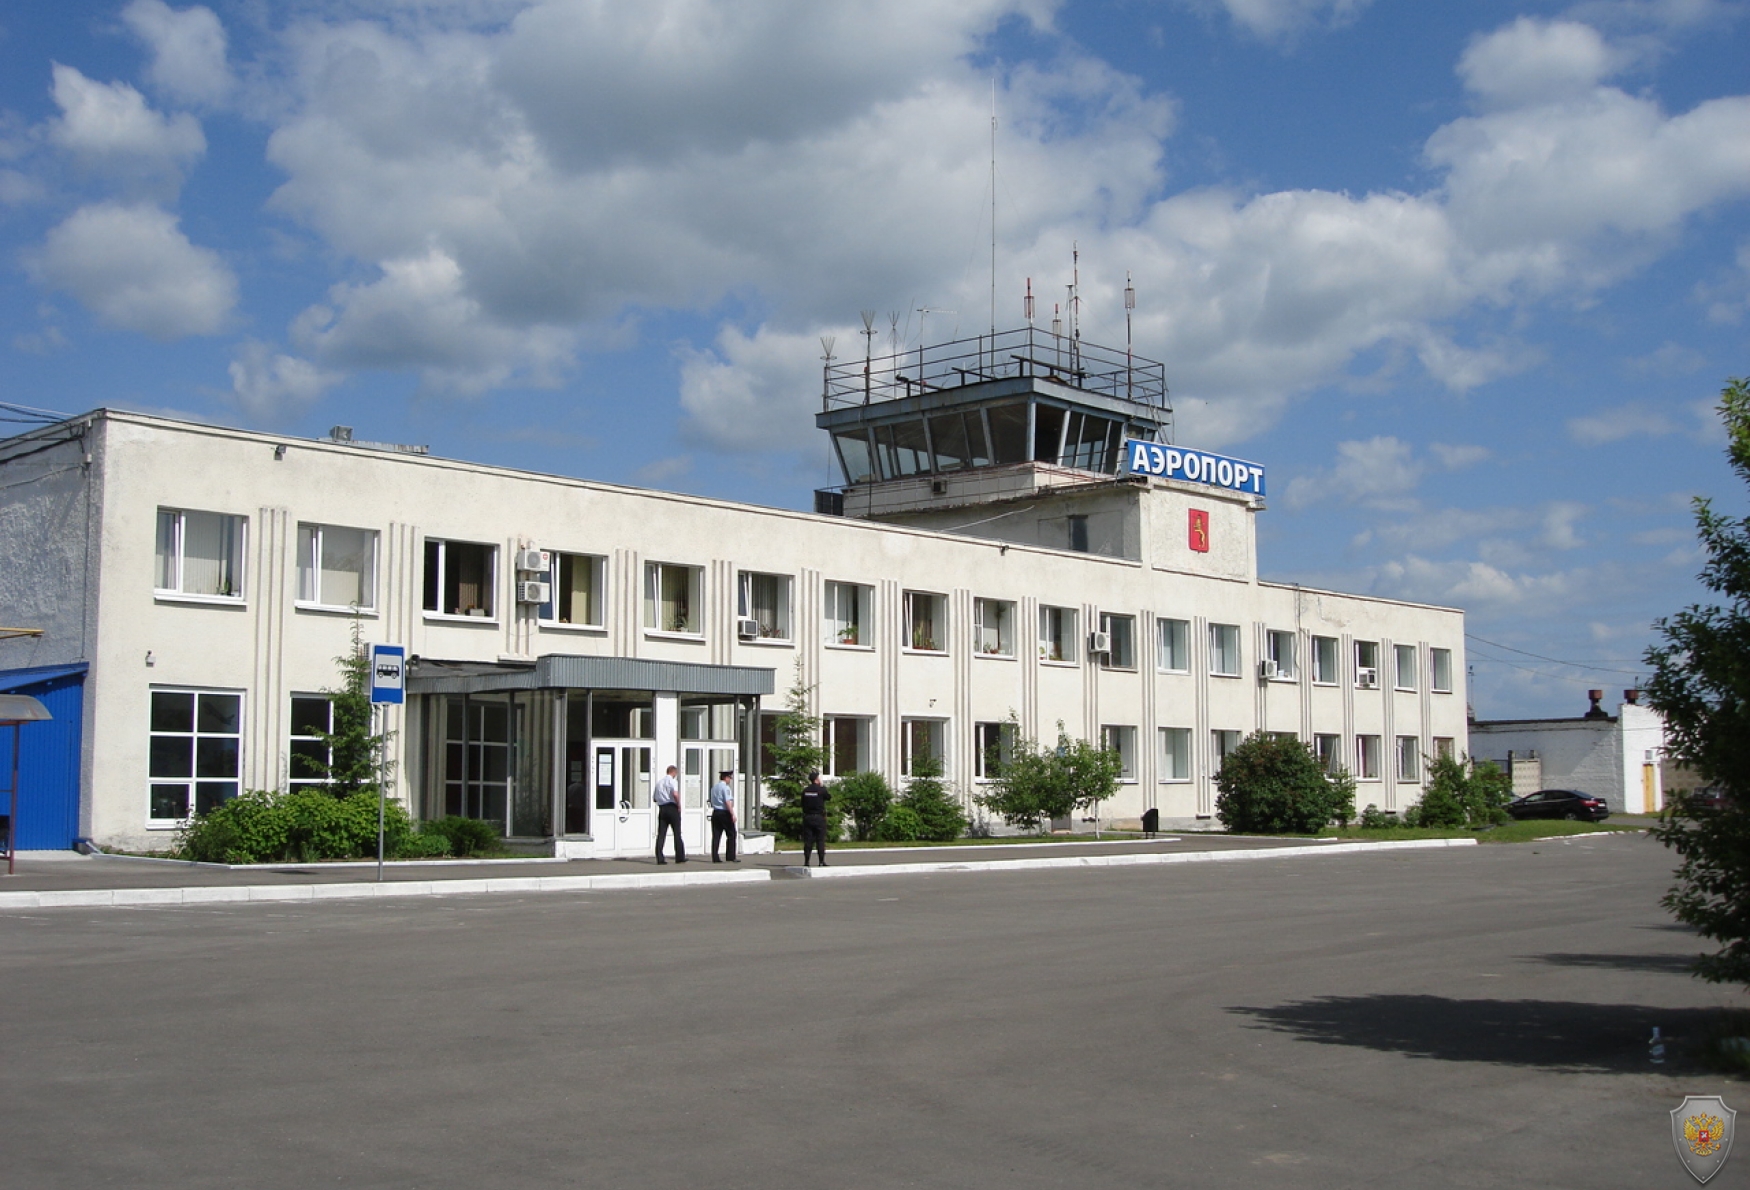 «Владимирская база авиационной охраны лесов», аэропорт гражданской авиации г.Владимир